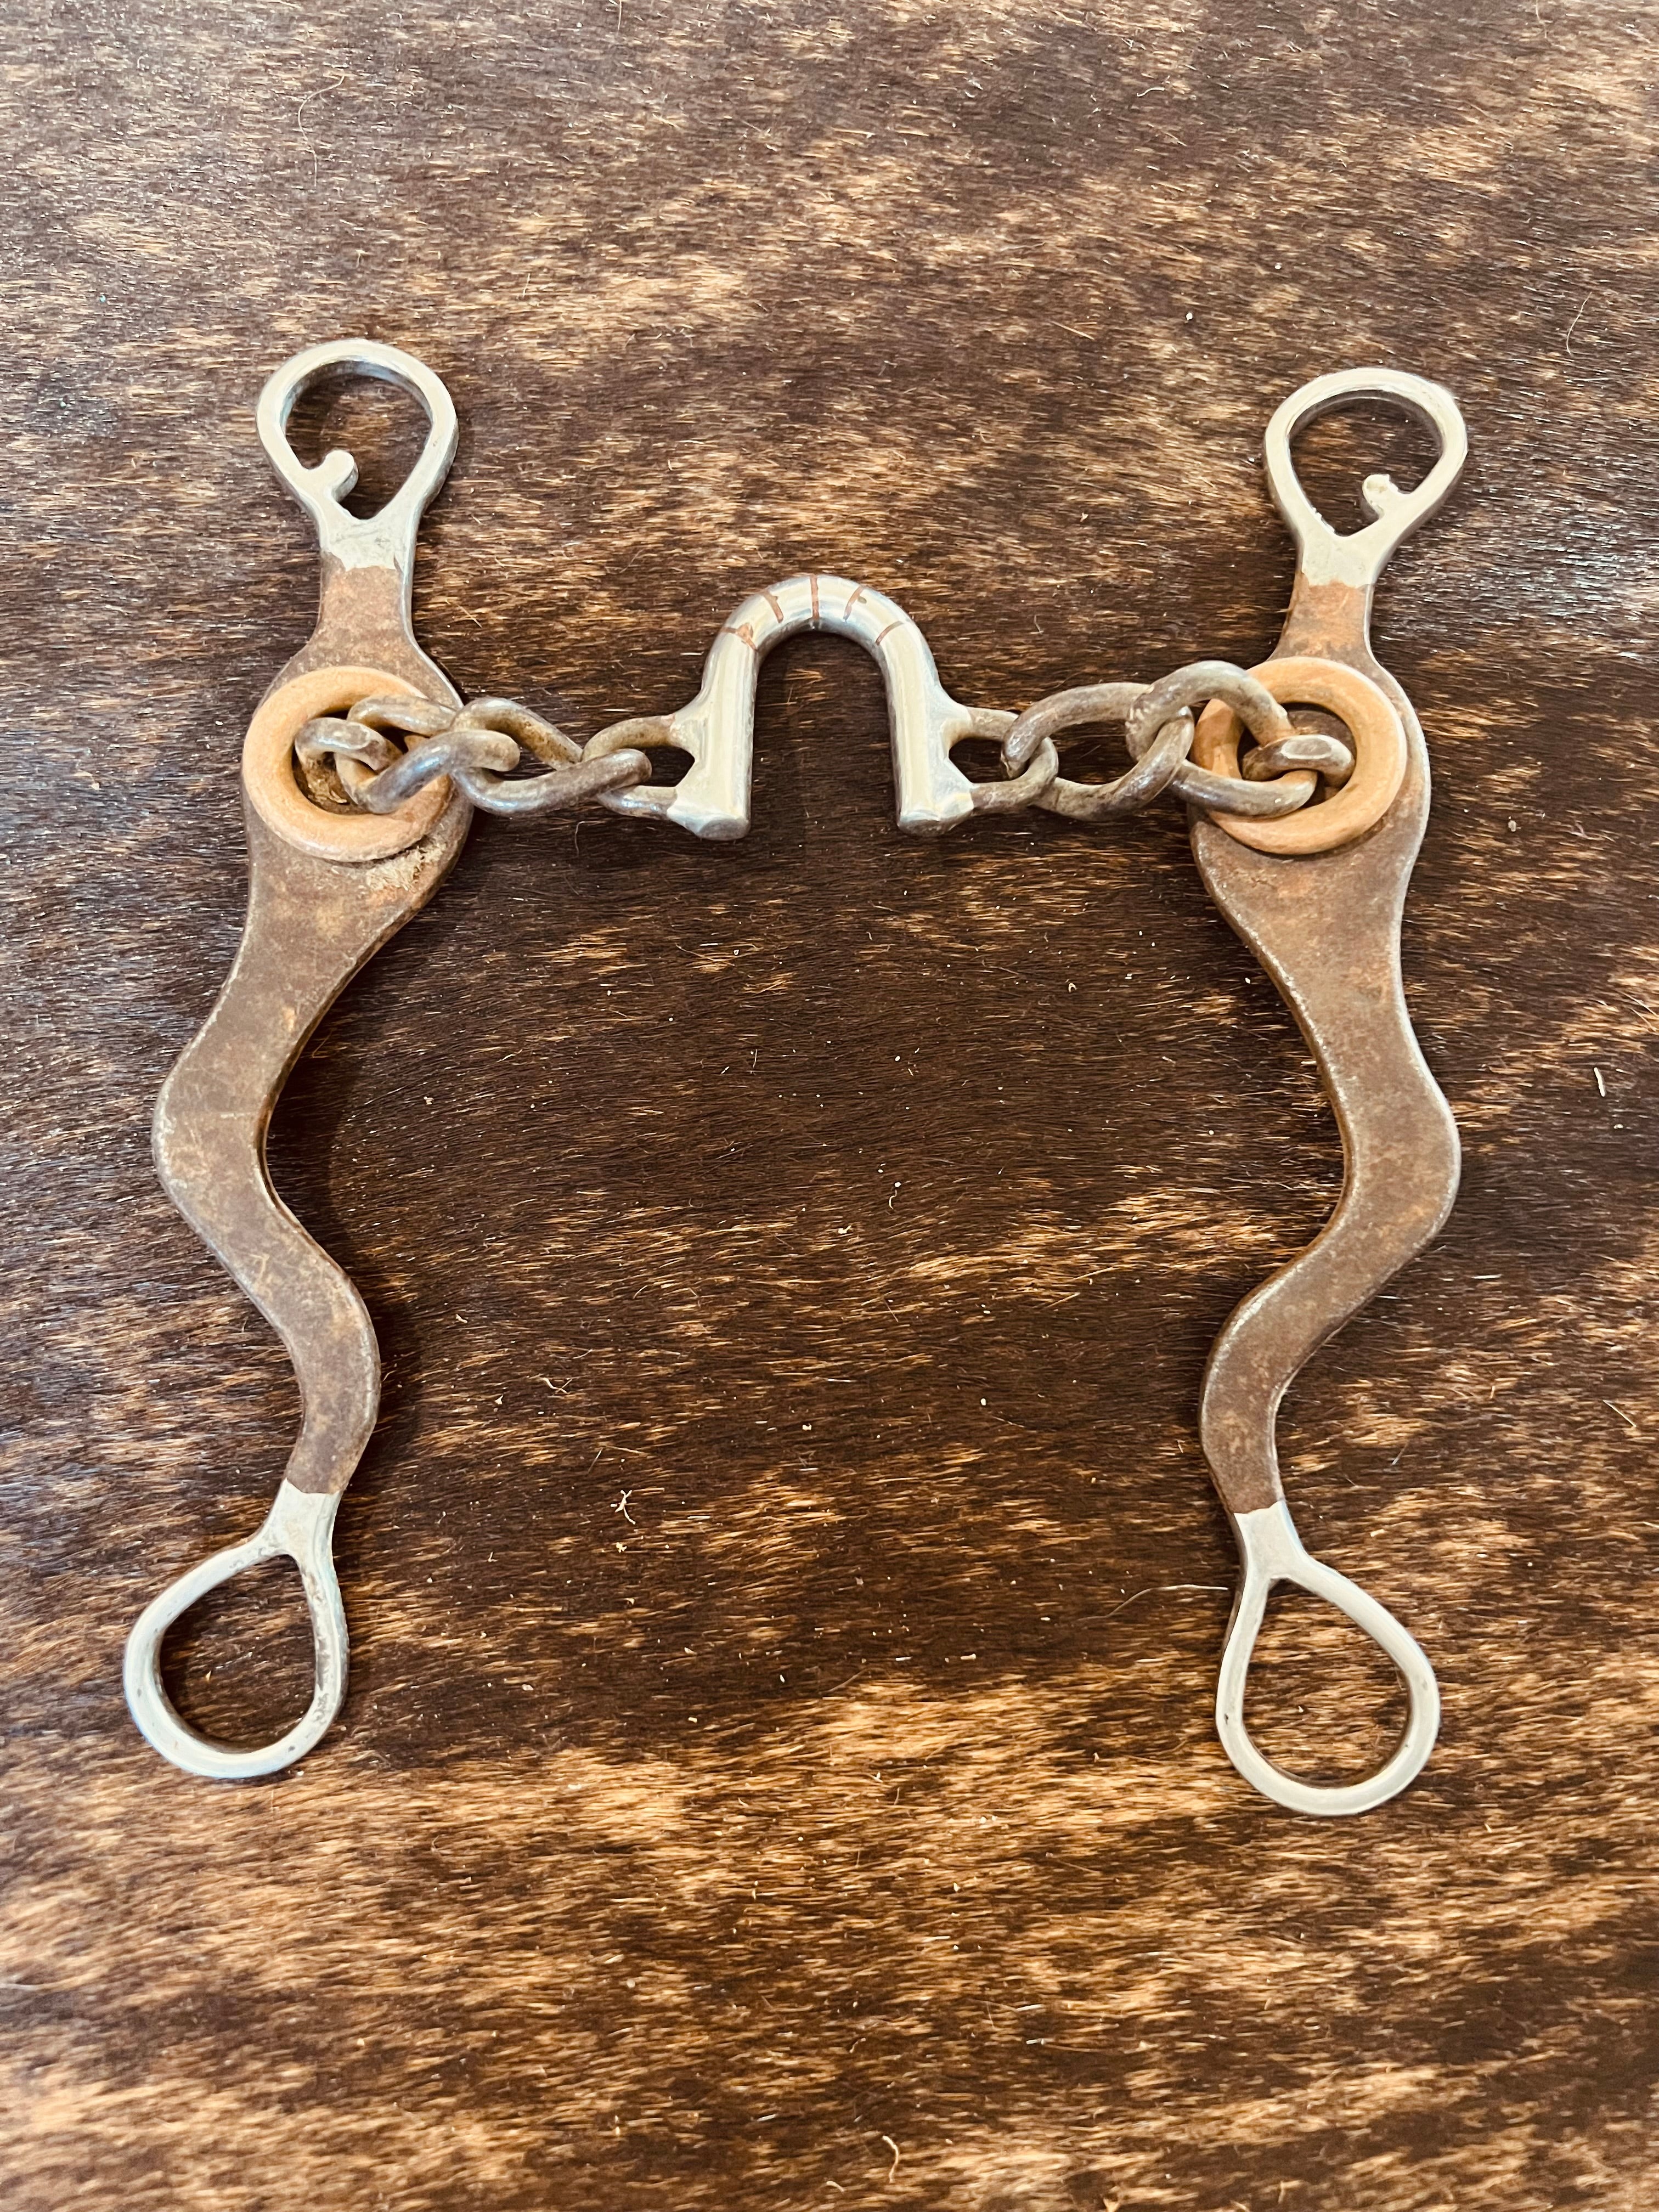 Ported Chain Bit